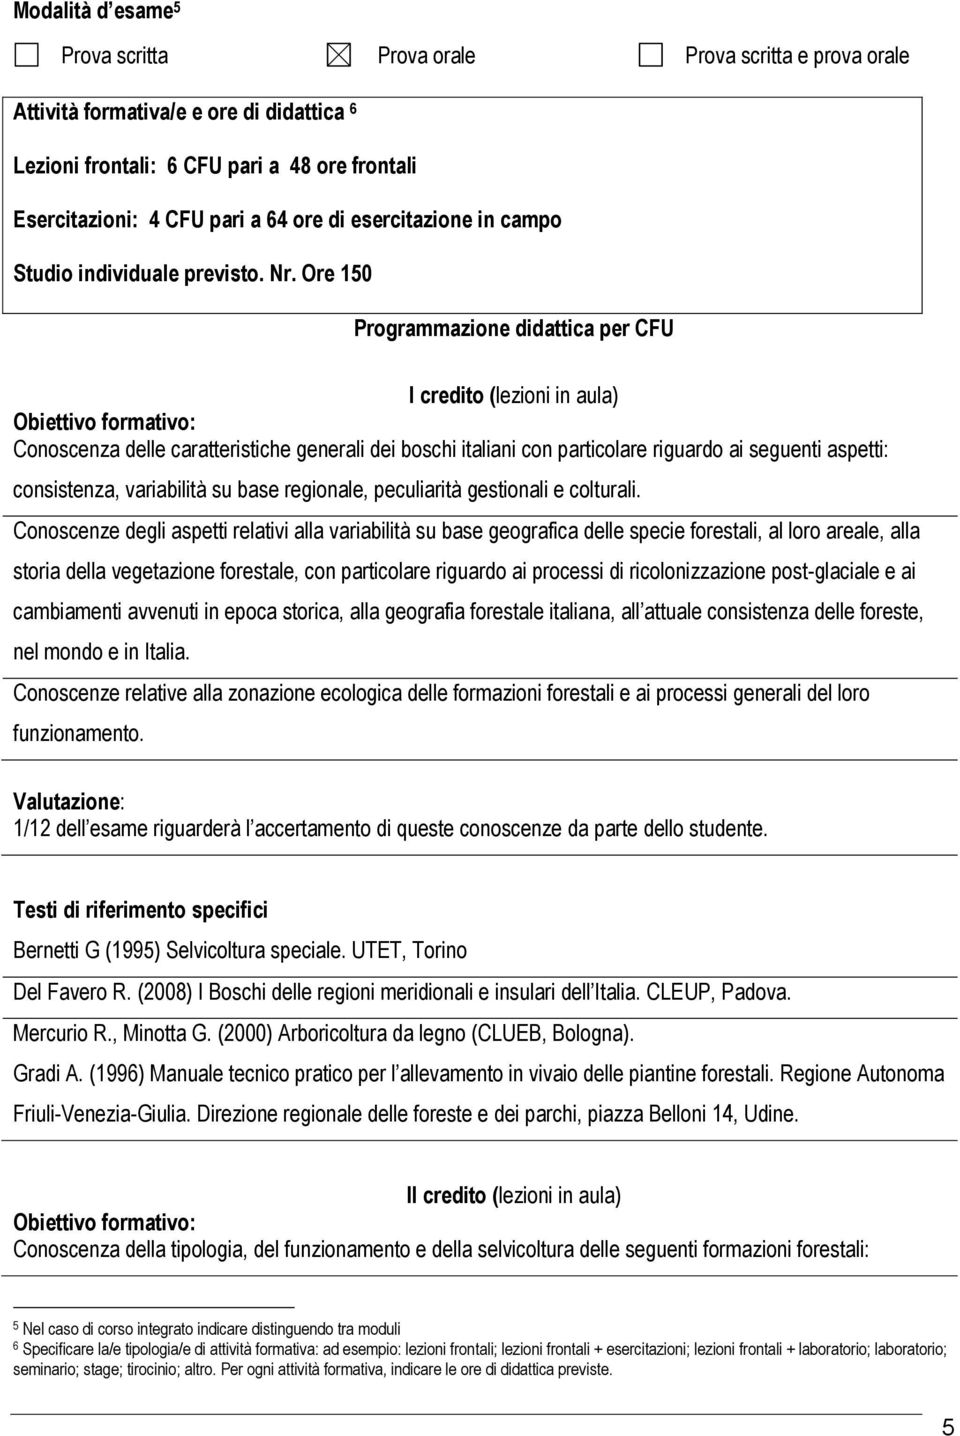 Ore 0 Programmazione didattica per CFU I credito (lezioni in aula) Conoscenza delle caratteristiche generali dei boschi italiani con particolare riguardo ai seguenti aspetti: consistenza, variabilità